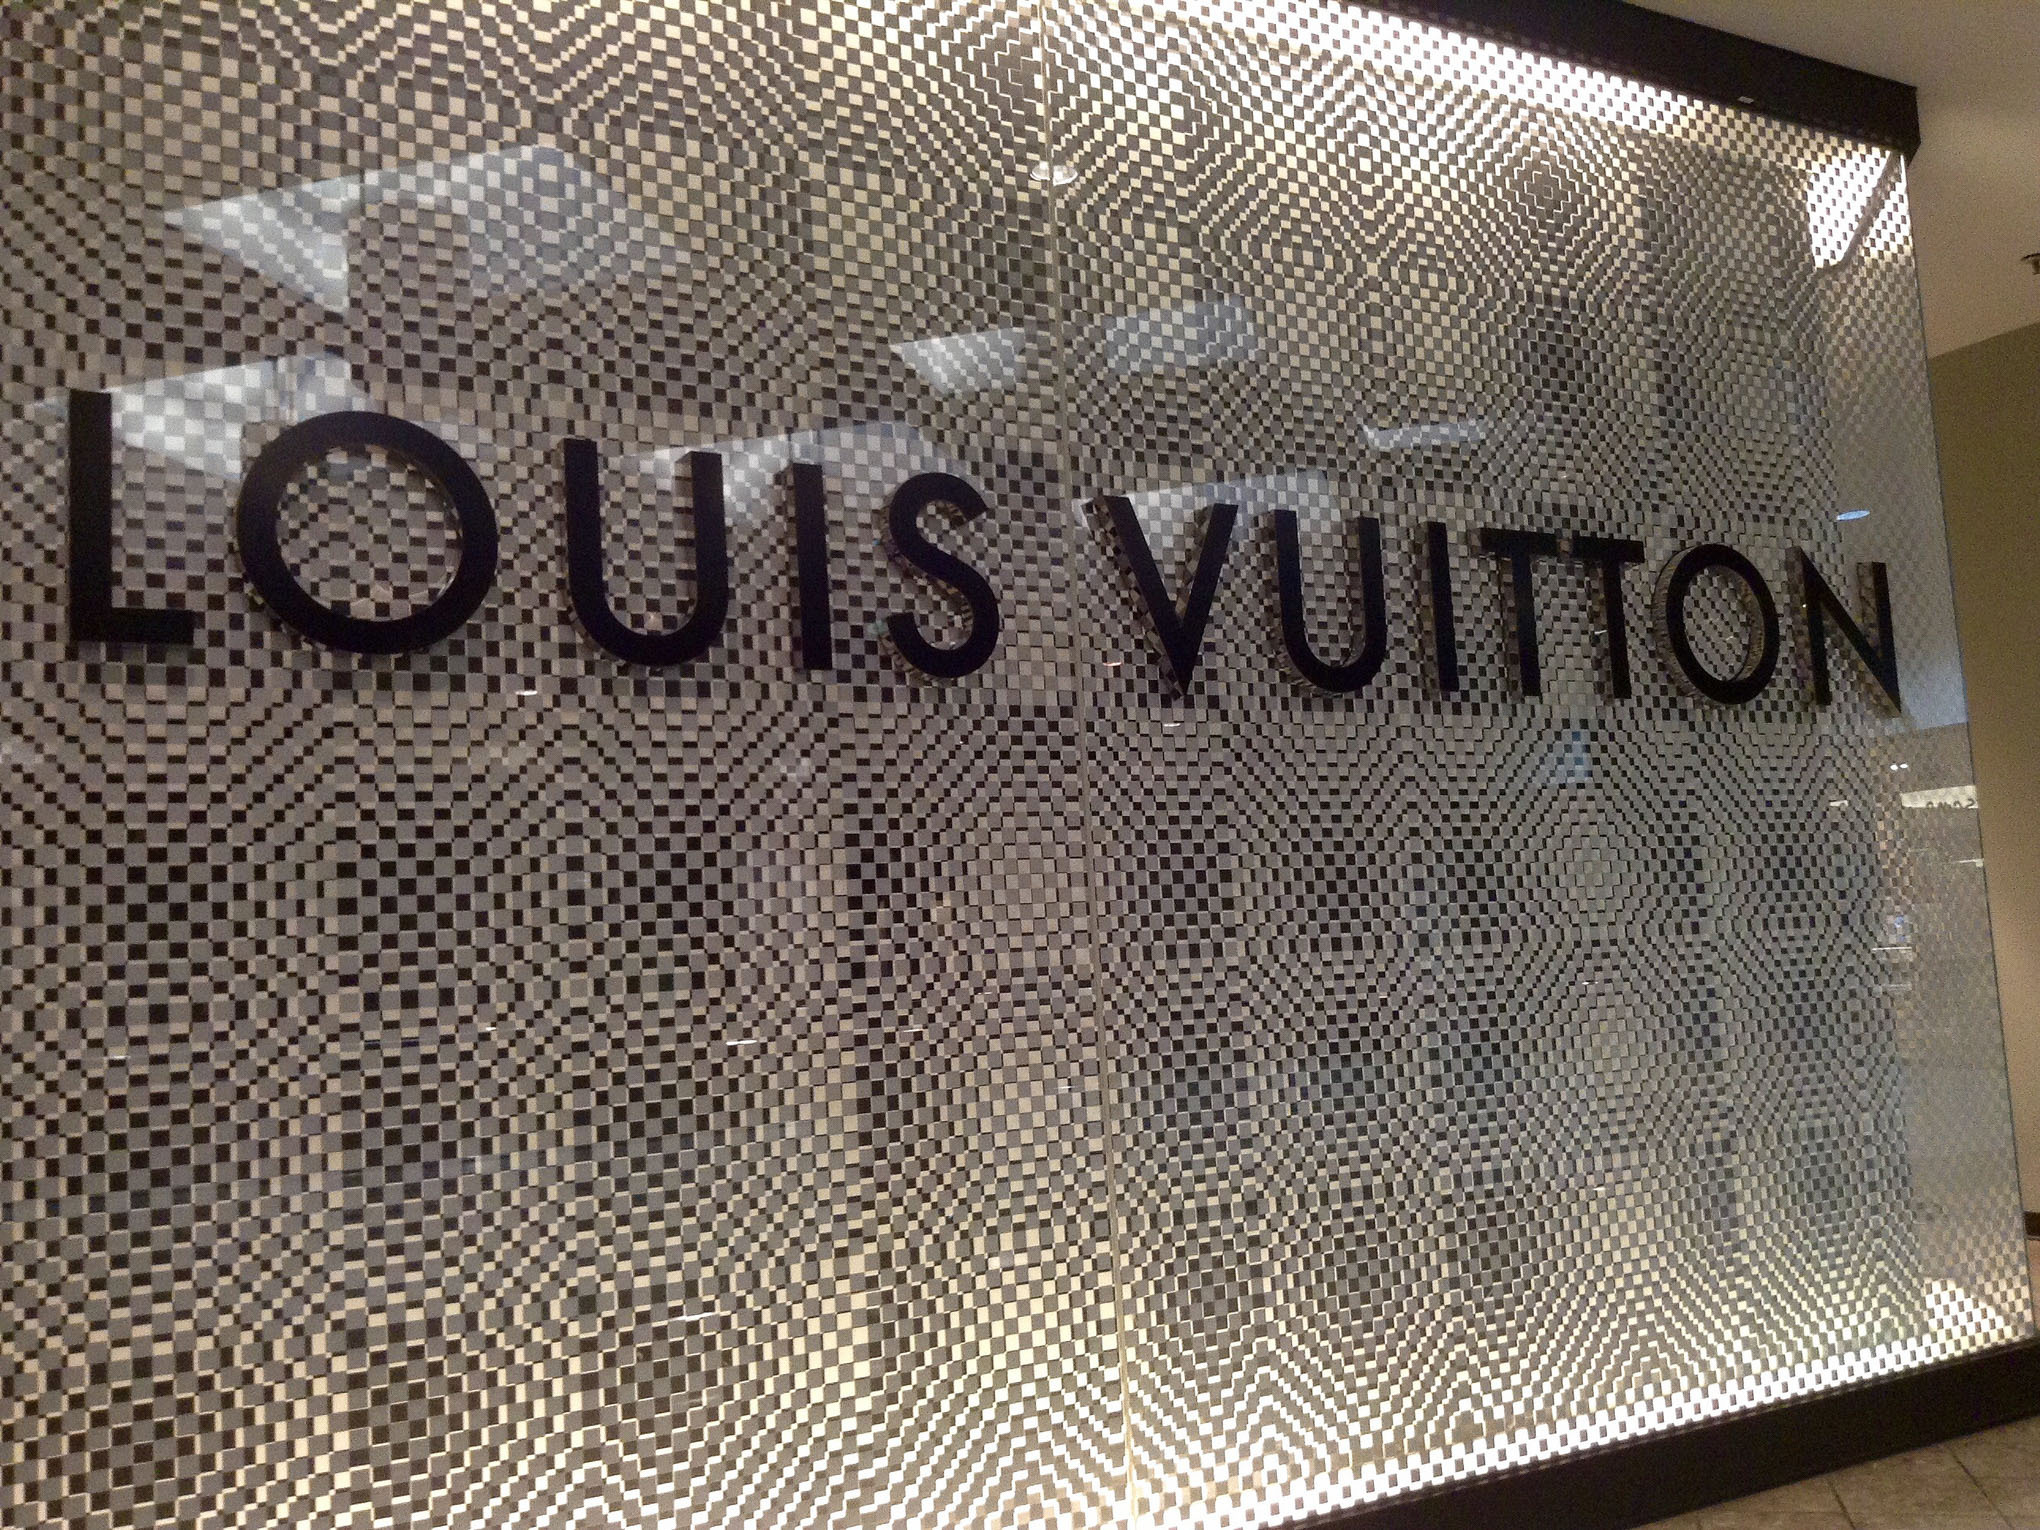 奢侈品玩電商，Louis Vuitton踏入中國電商的４大策略